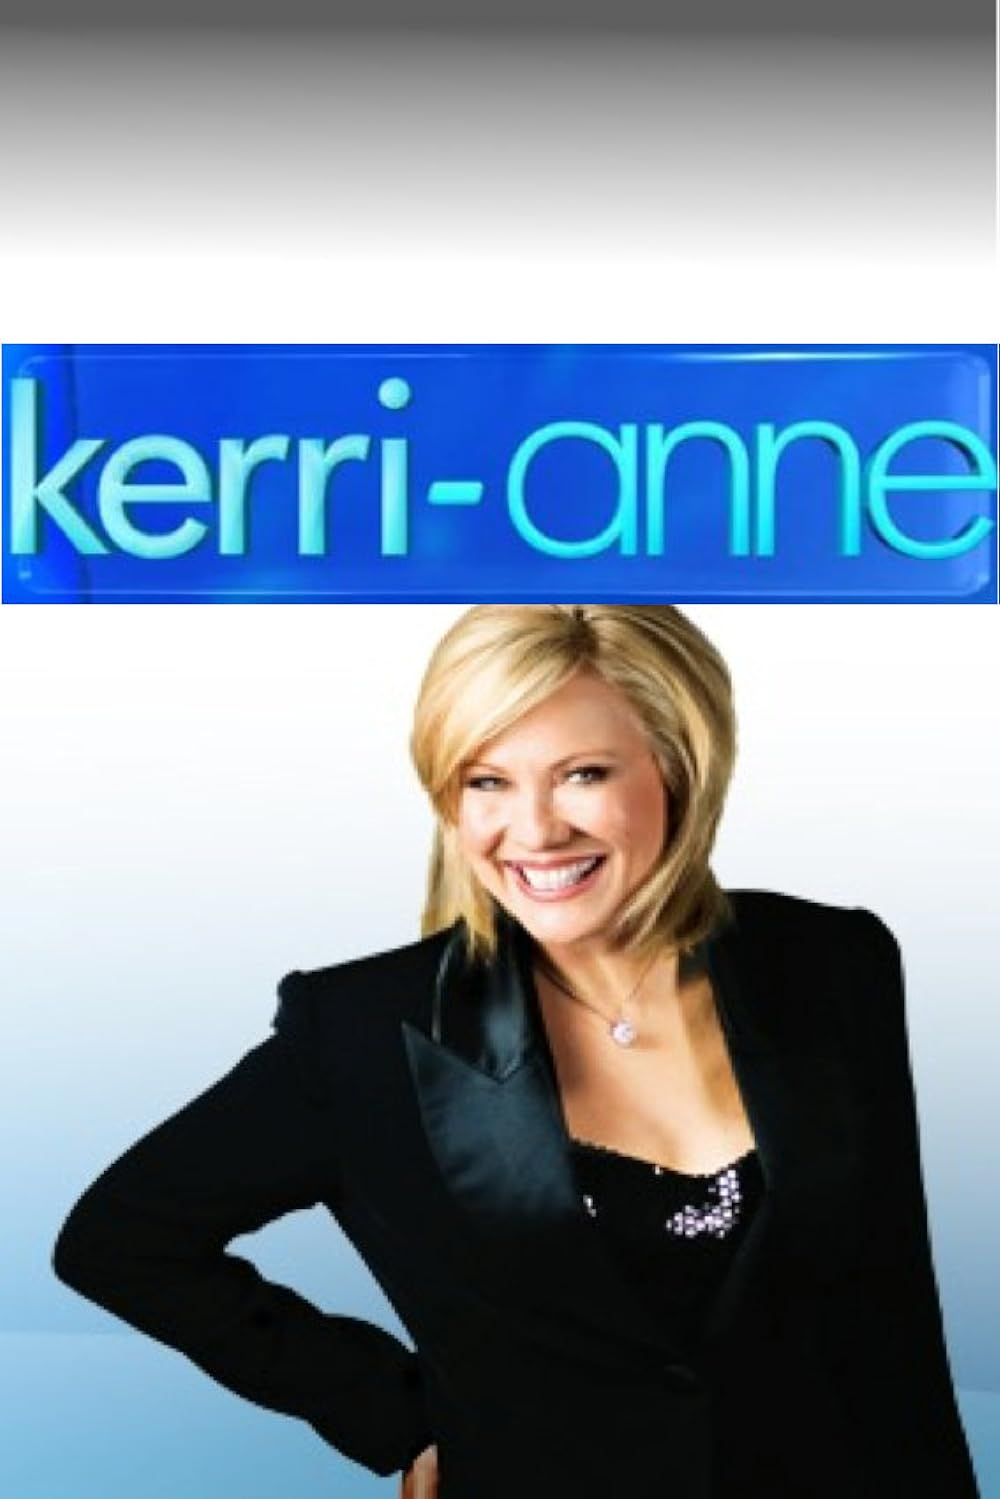 Kerri-Anne Kennerley on her show 'Kerri-Anne'